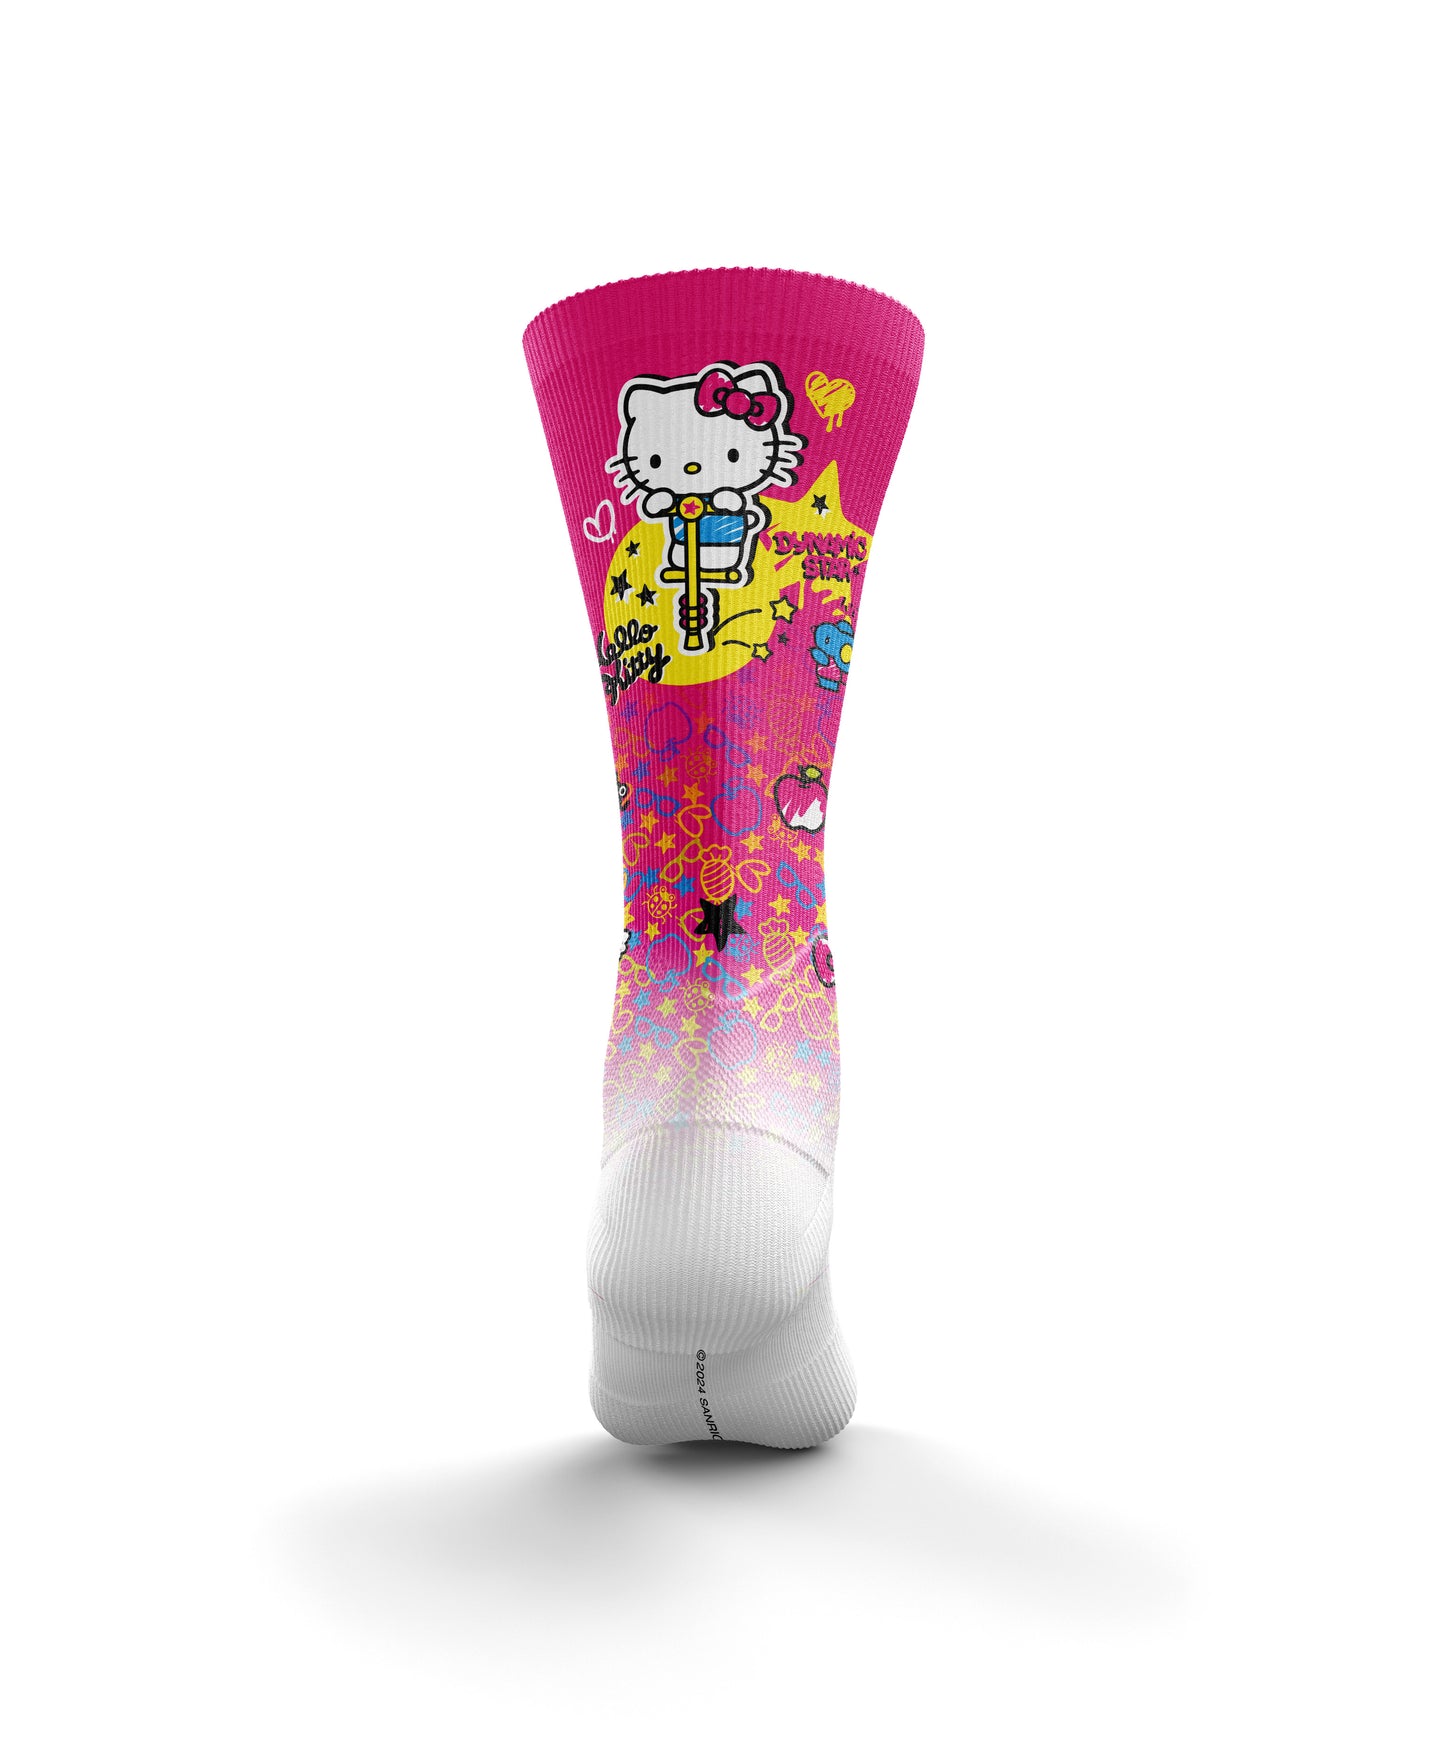 Mitjons Sublimados - Hello Kitty Sparkle